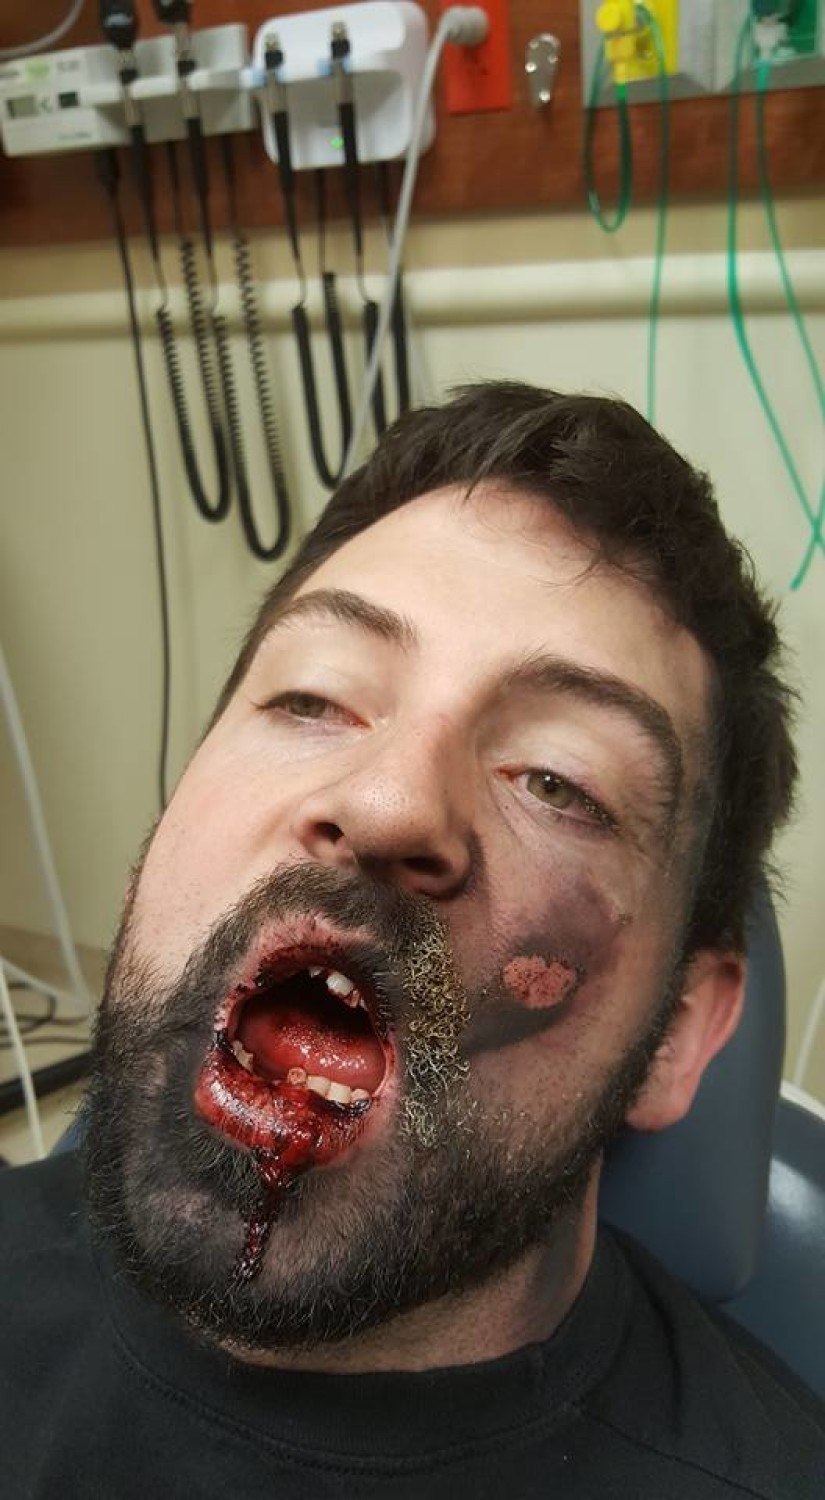 E-papieros eksplodował mu w ustach? Stracił kilka zębów i doznał licznych obrażeń. Zobacz zdjęcia.